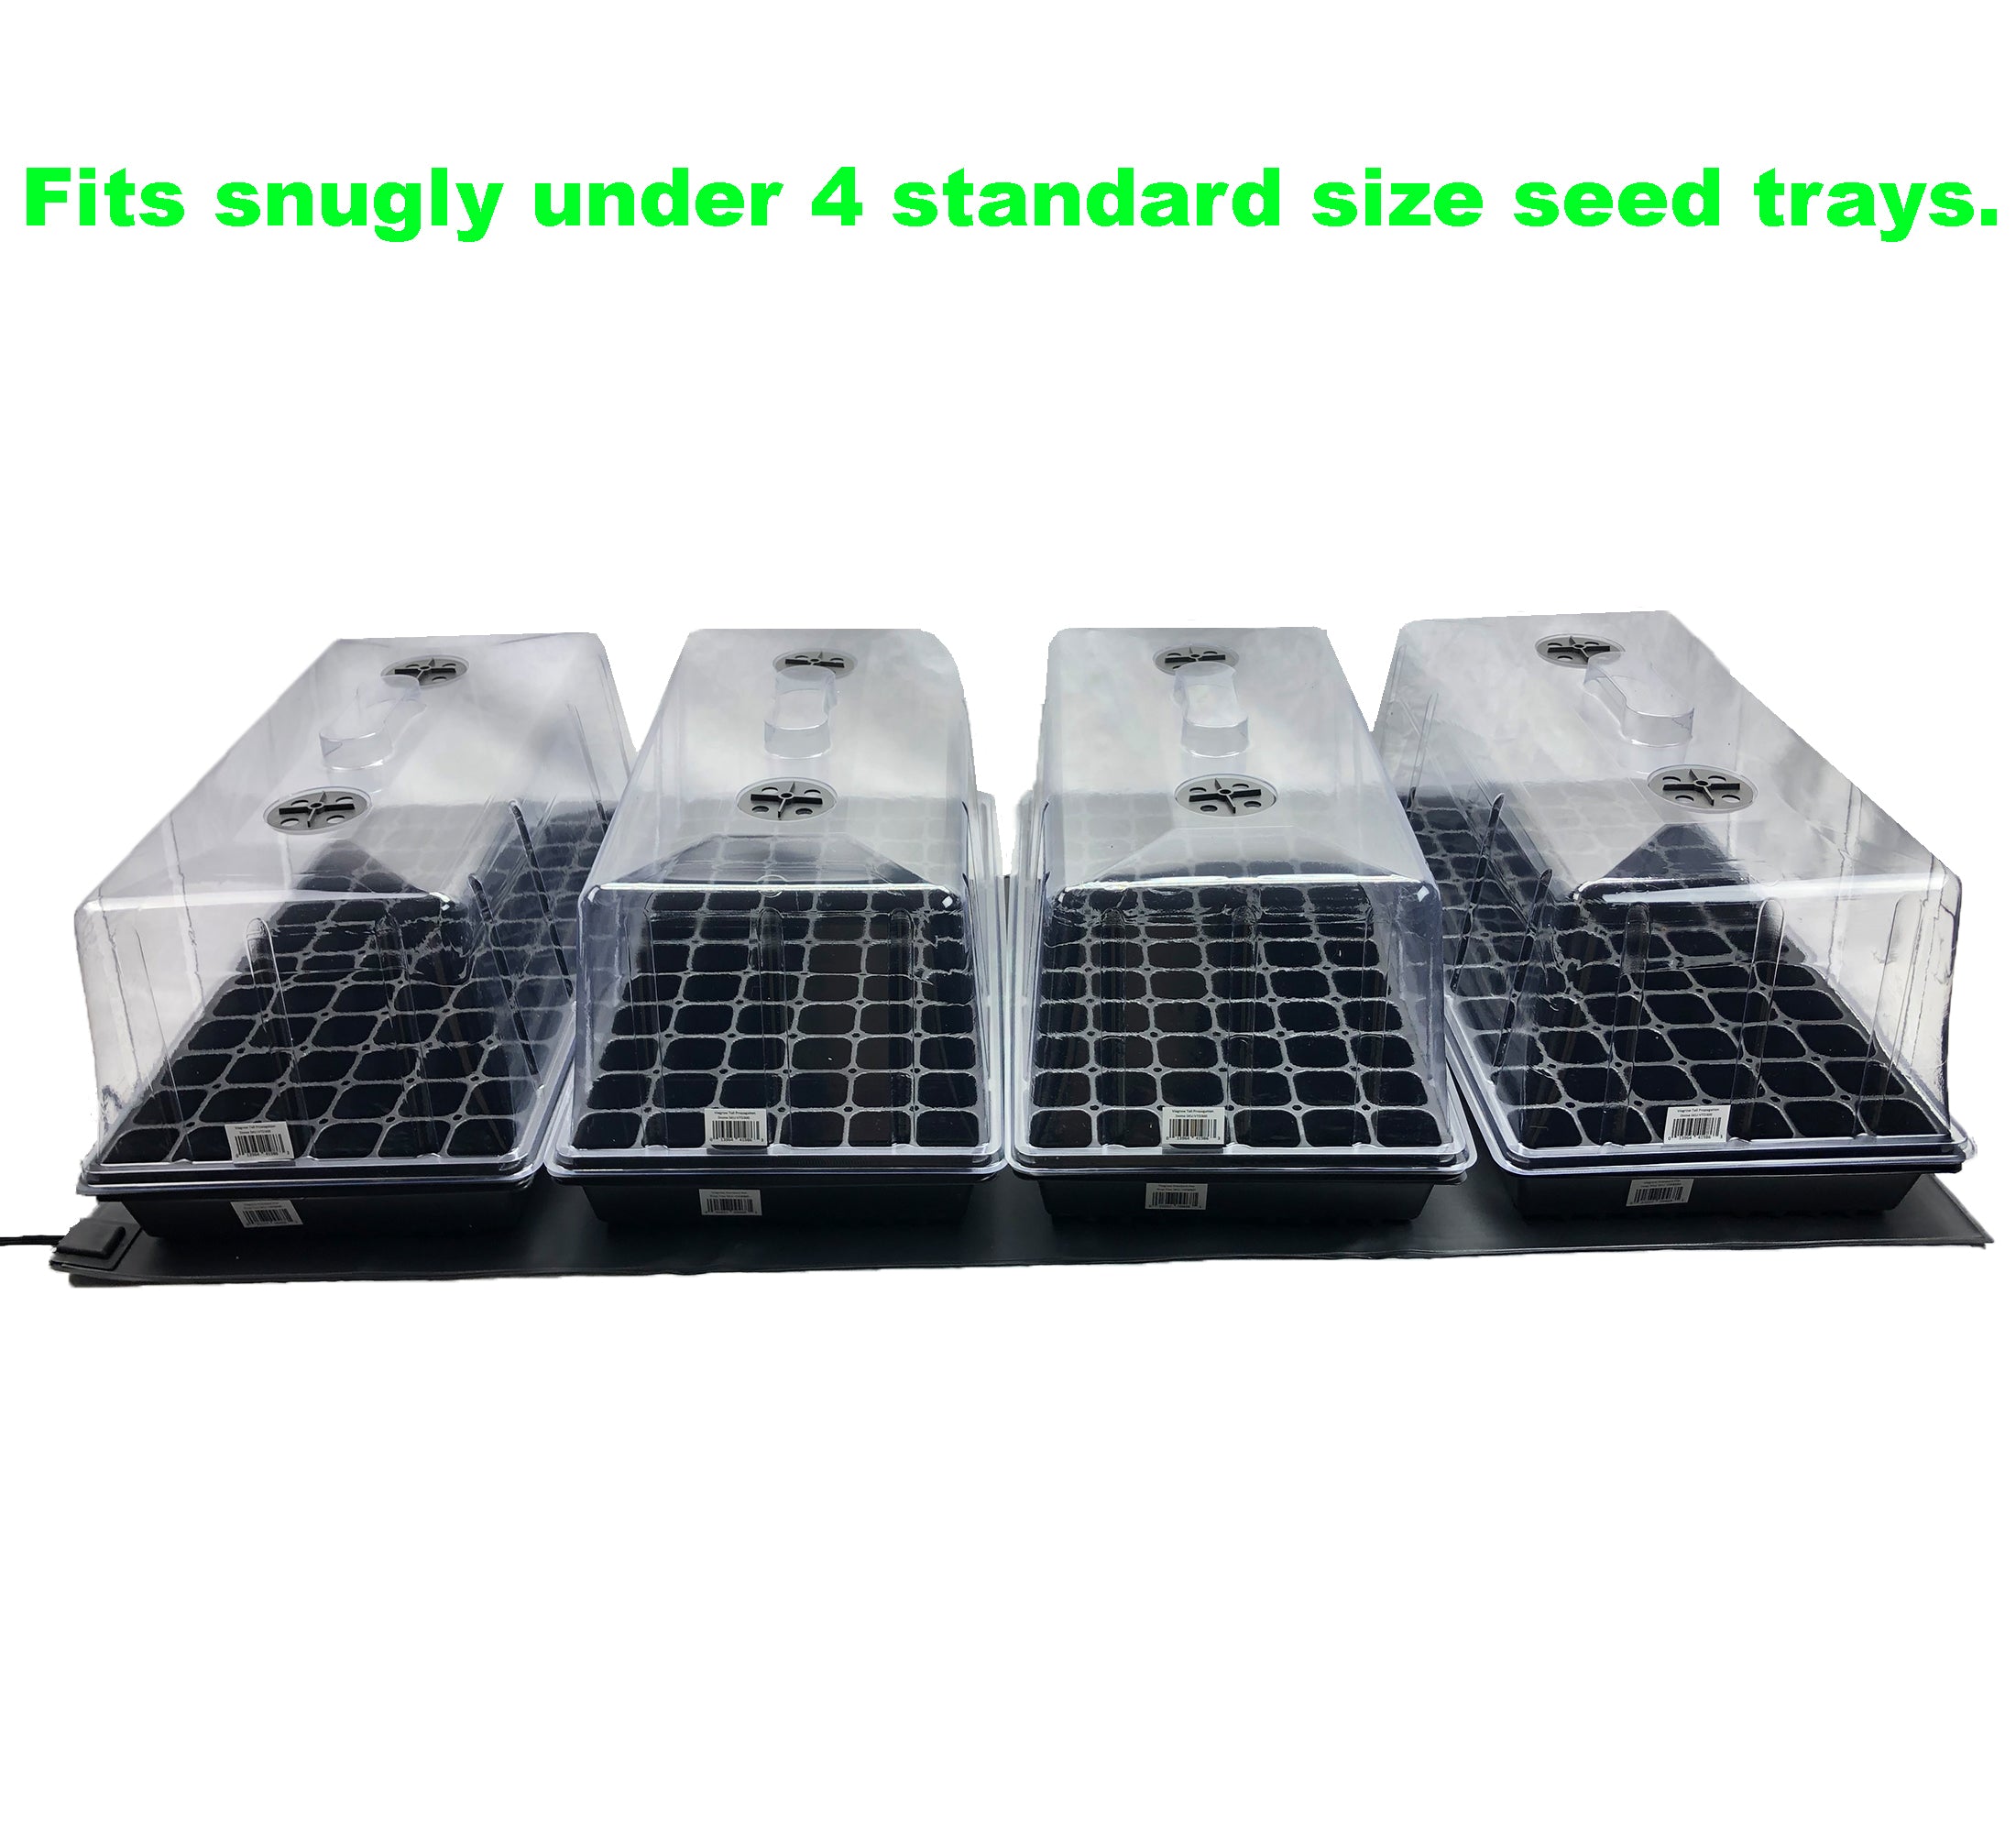 Alfombrilla térmica para plántulas de propagación de semillas Viagrow, 20.5 "x 48" (25 unidades)